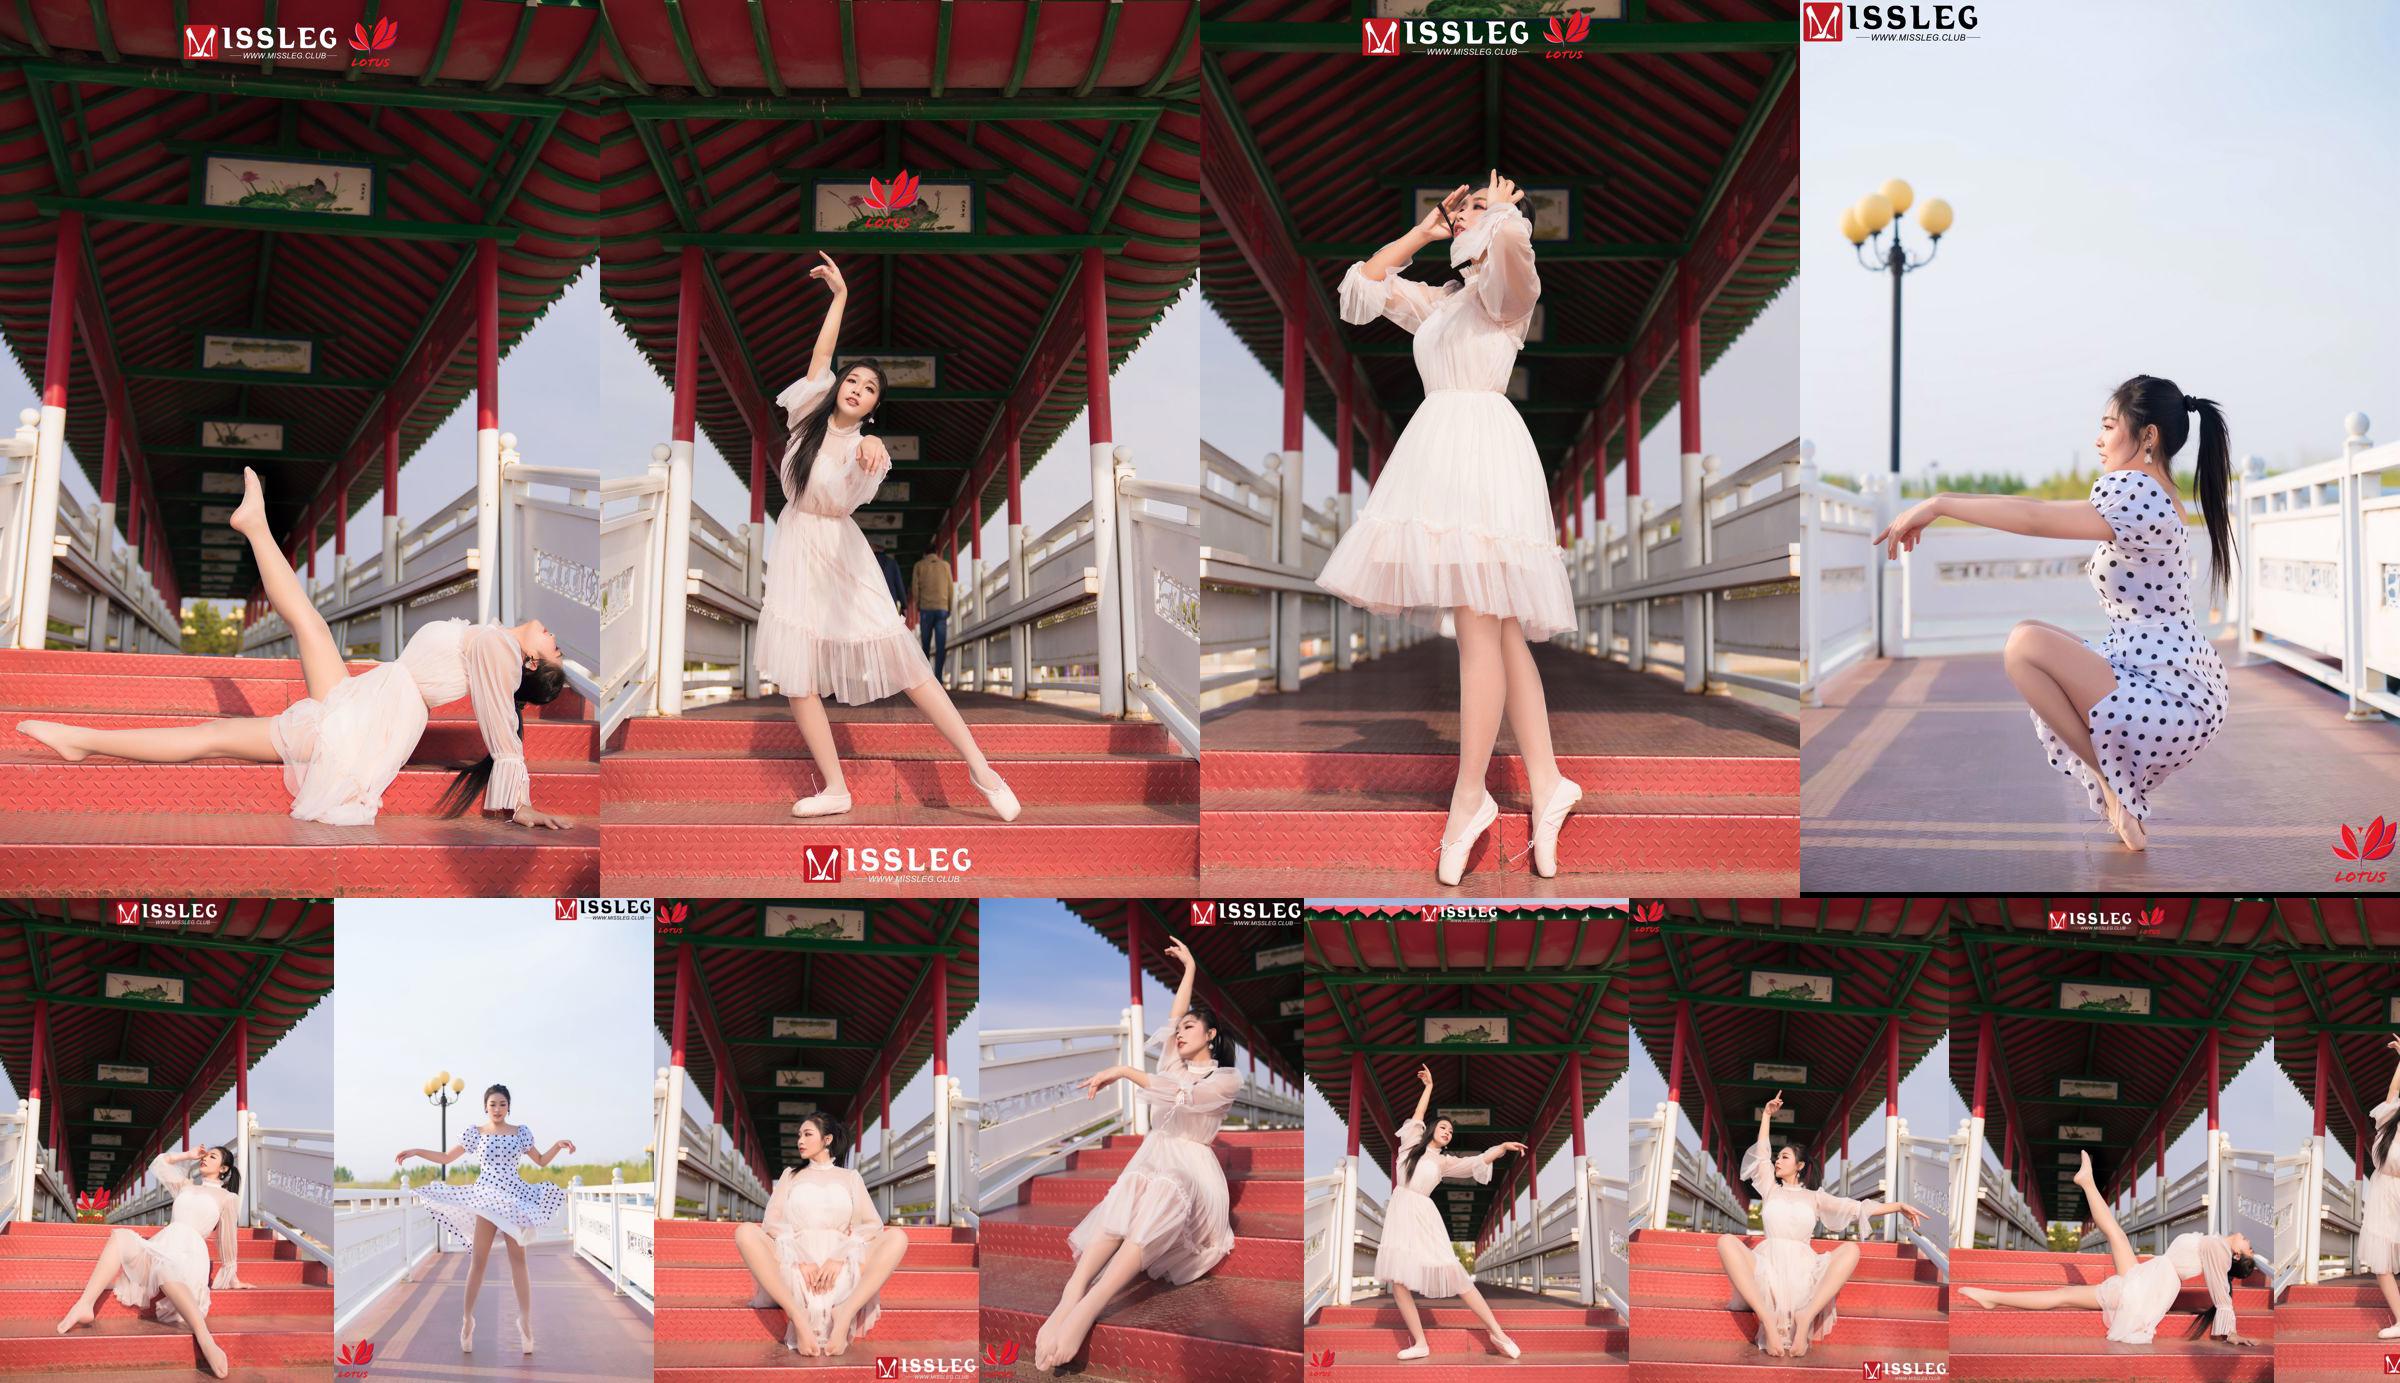 [蜜丝MISSLEG] M018 Imp 3 "Scenic Dancer" No.fffffa Page 9